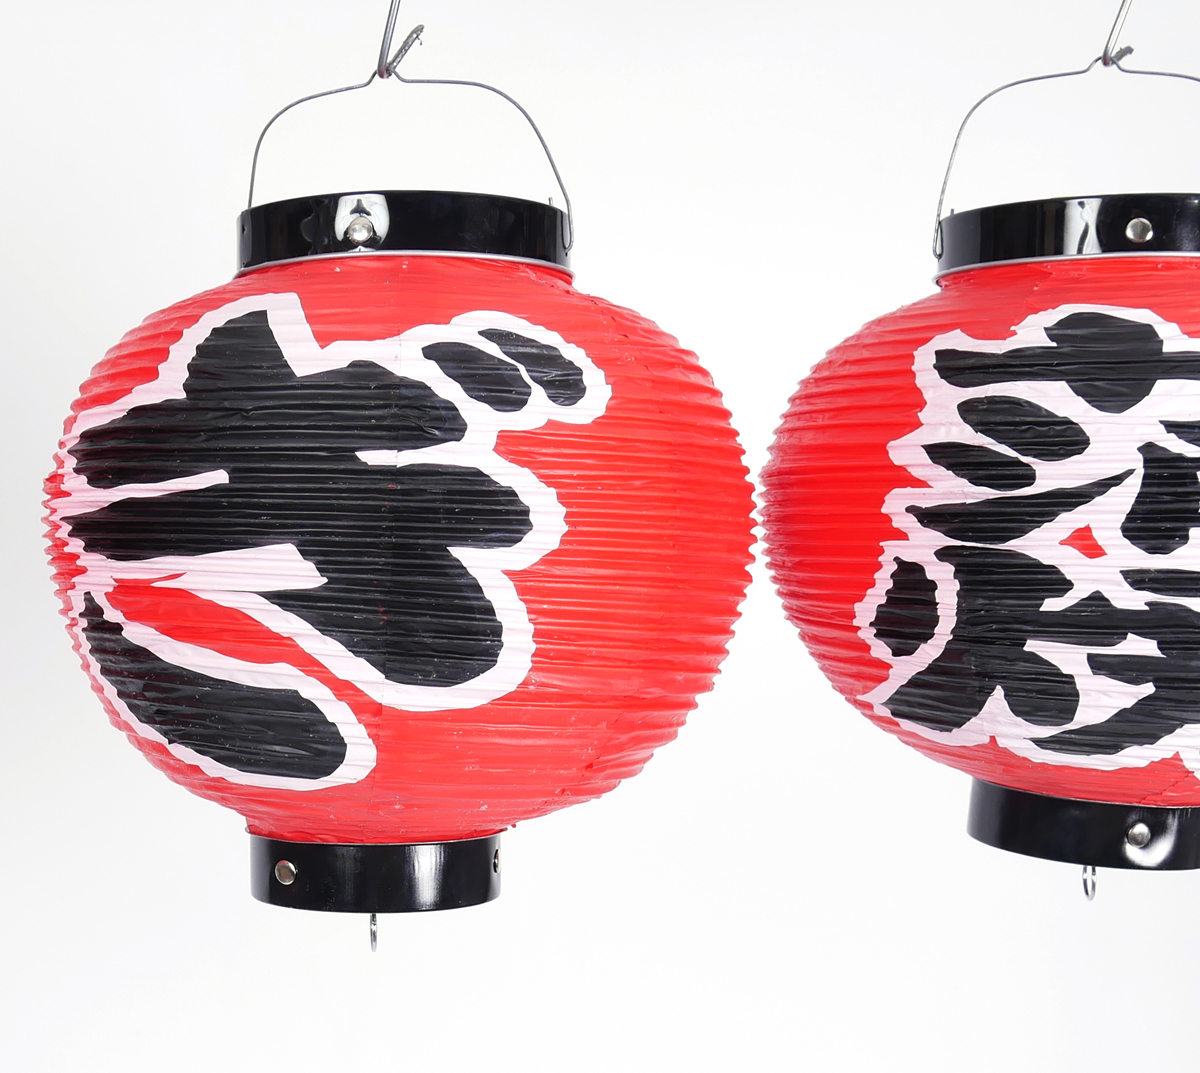 Lanternes Japonaises